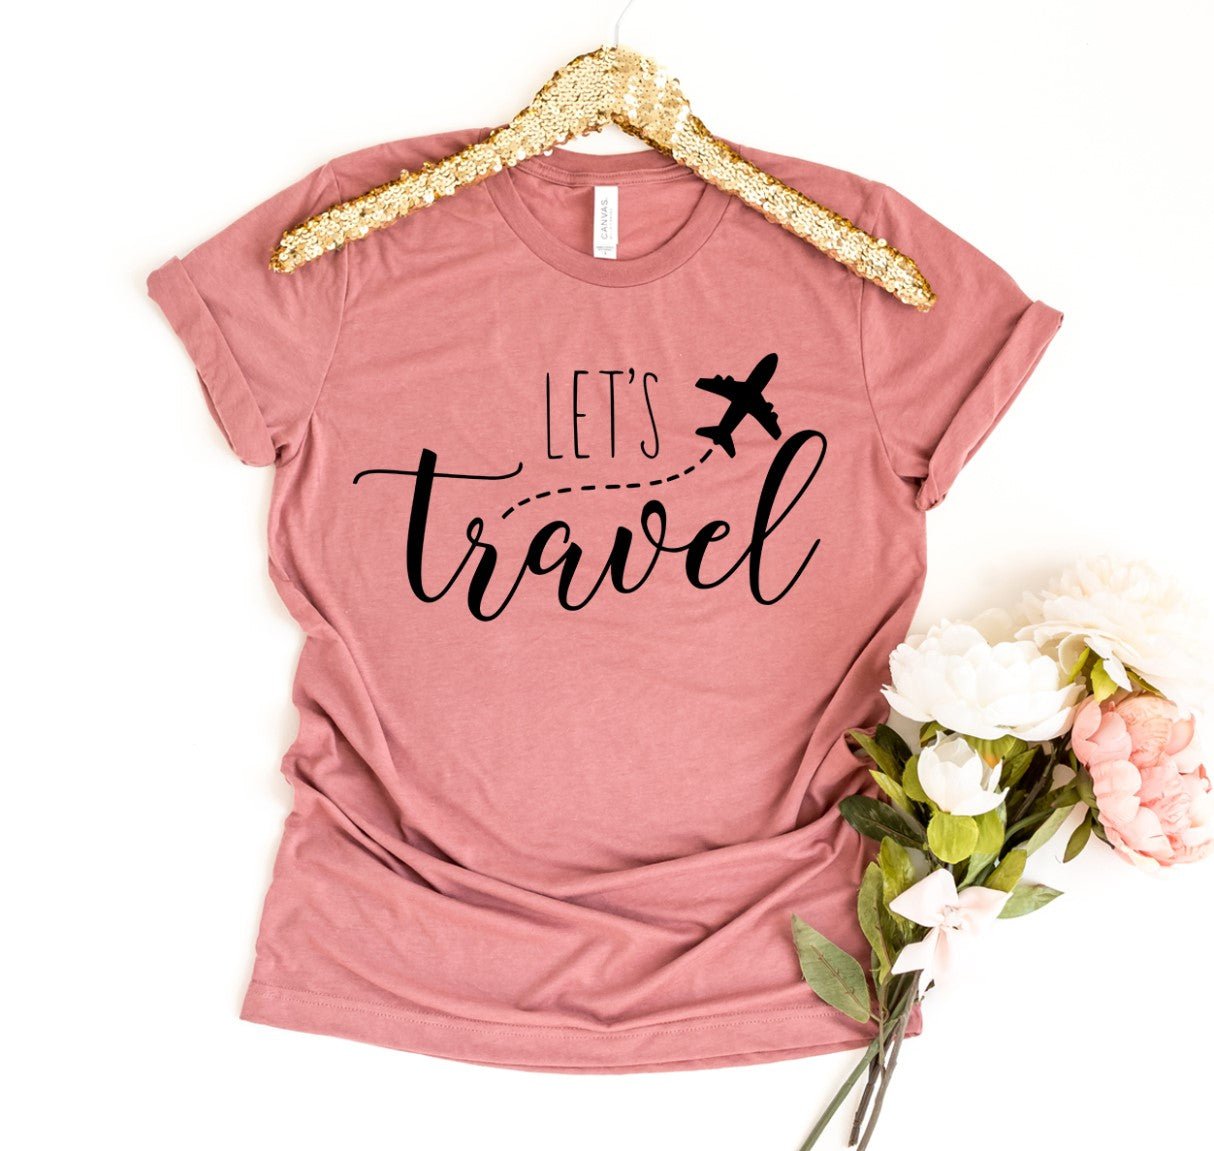 Lets Travel T-shirt - Kind Designs